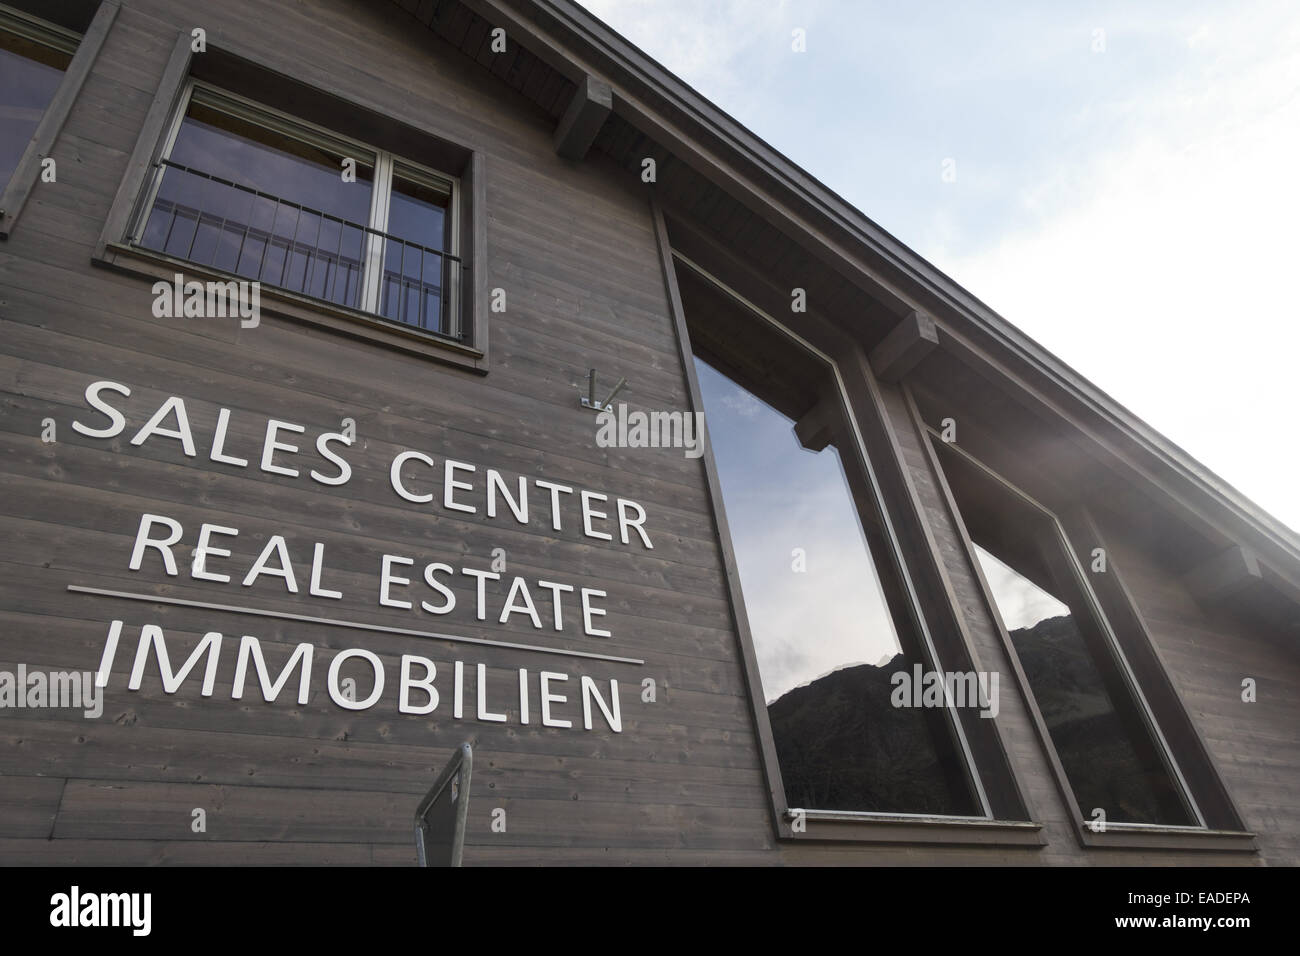 Projet de tourisme immobilier par l'investisseur Samih Sawiri, Andermatt, Uri, Suisse Banque D'Images